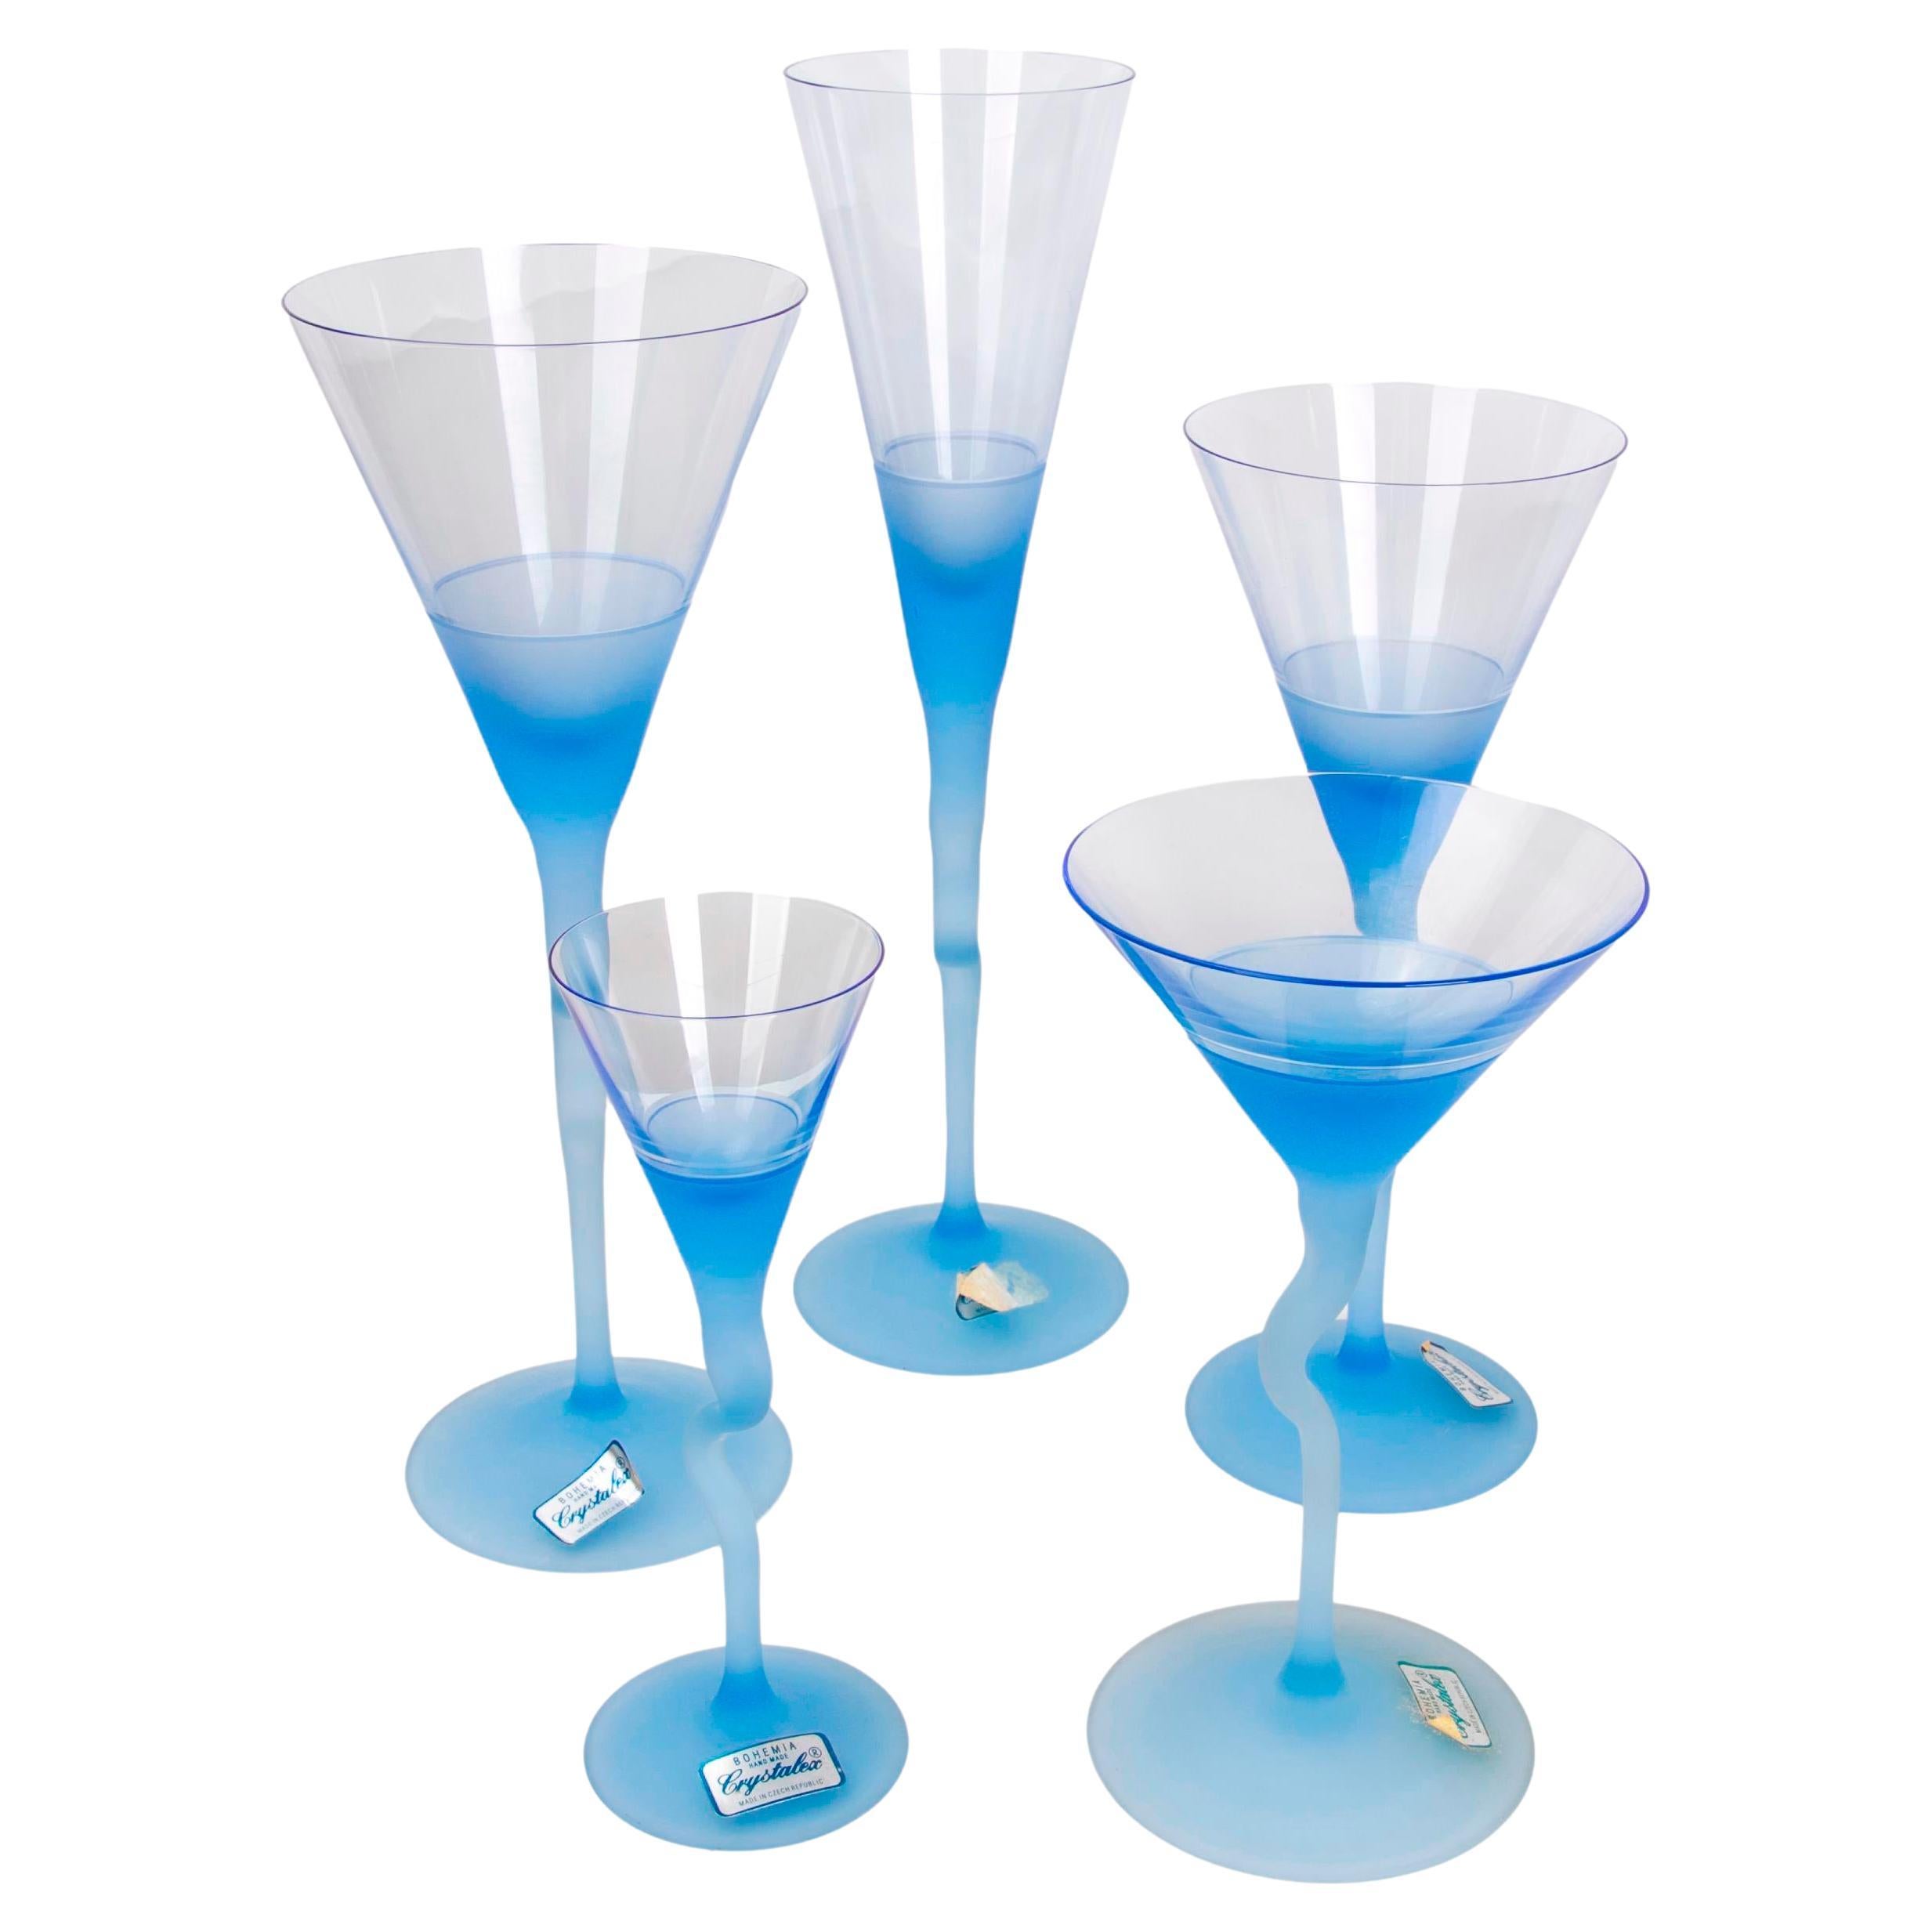 Glaswaren aus vierunddreißig verschiedenen böhmischen Gläsern in verschiedenen Größen